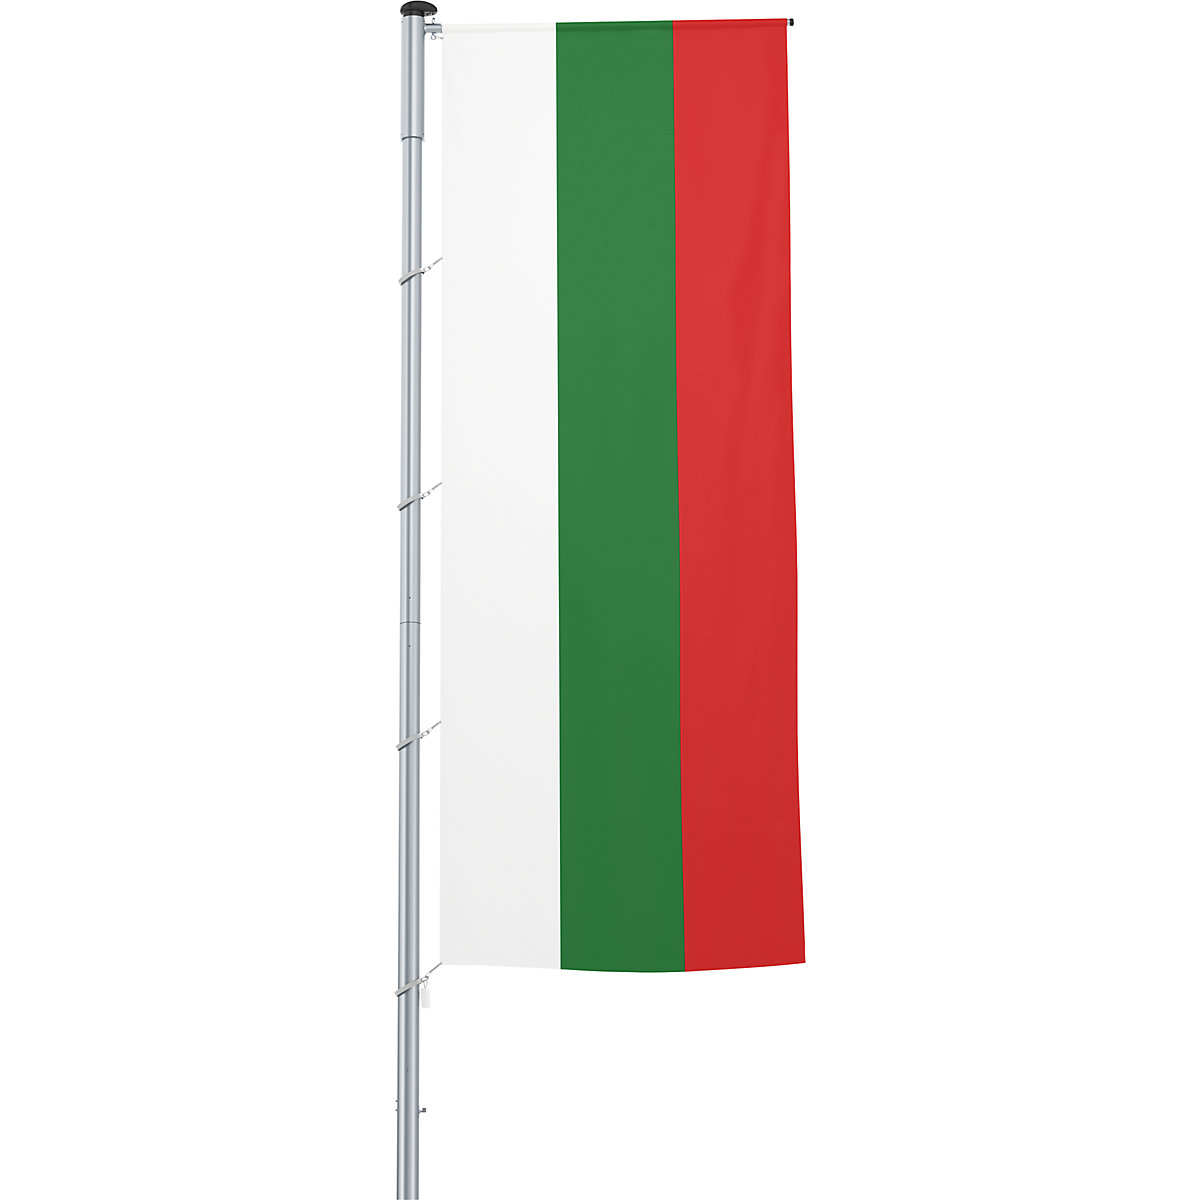 Gémes zászló/országzászló – Mannus, méret 1,2 x 3 m, Bulgária-14